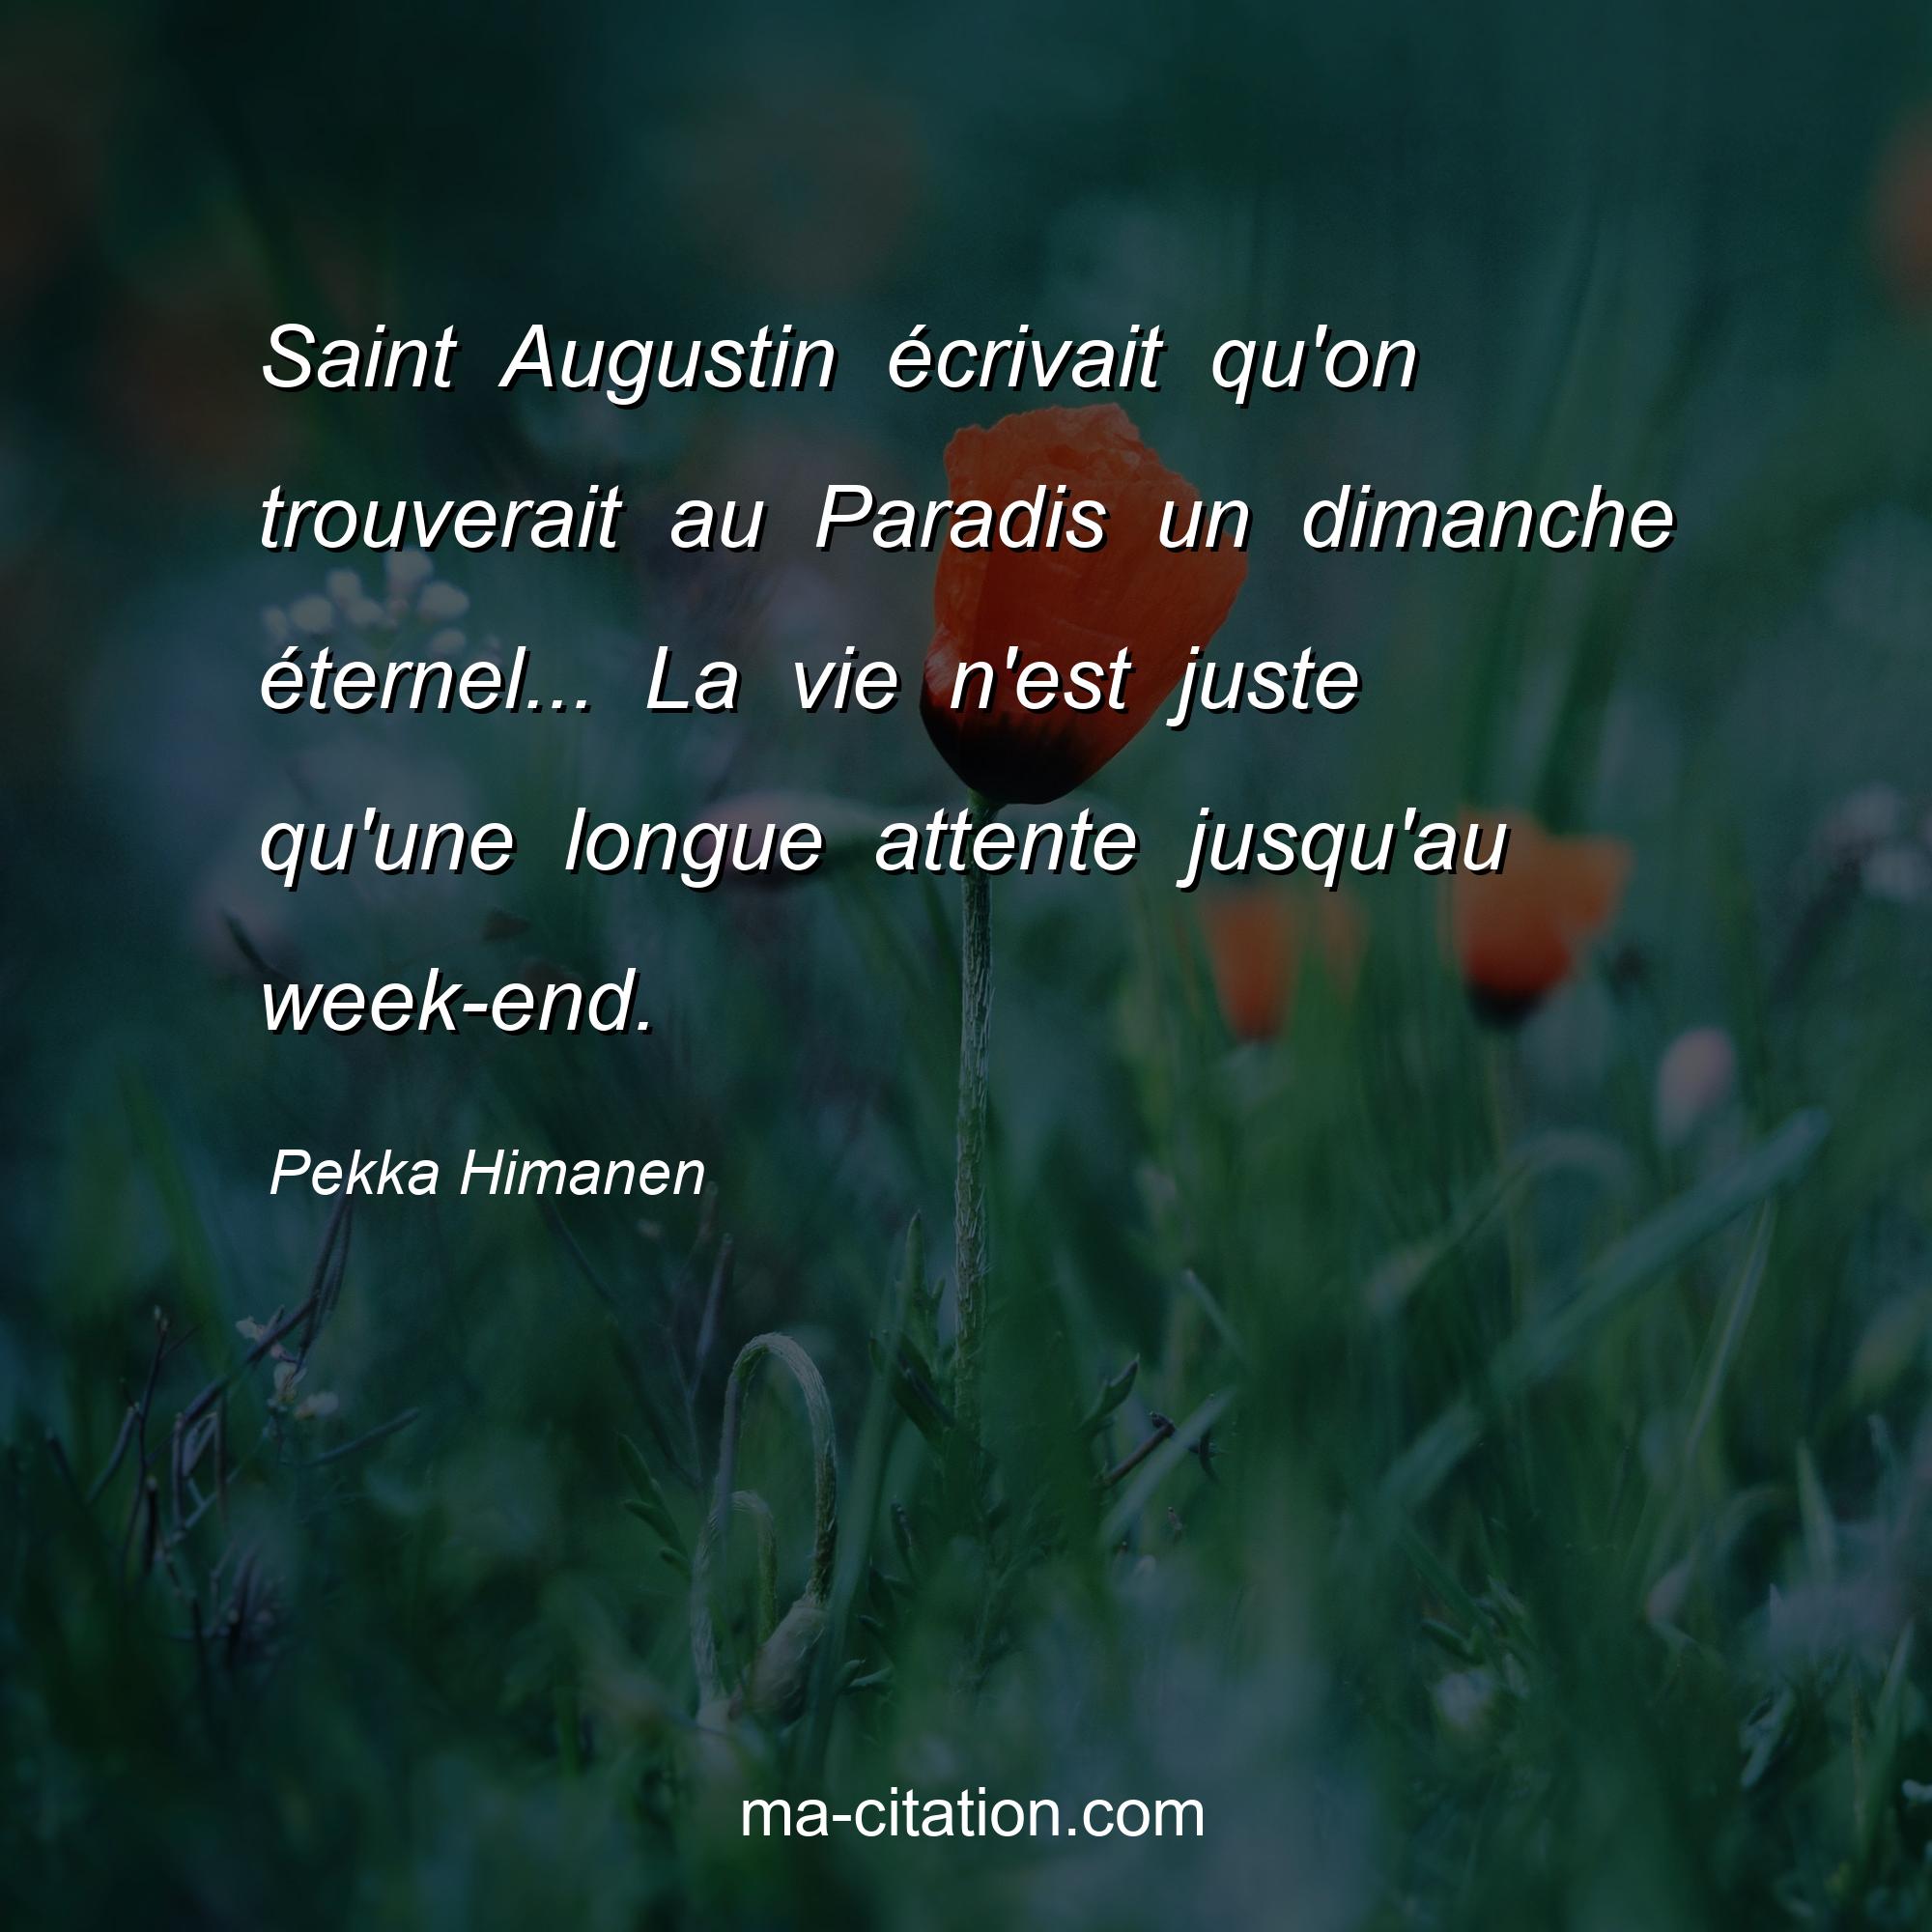 Pekka Himanen : Saint Augustin écrivait qu'on trouverait au Paradis un dimanche éternel... La vie n'est juste qu'une longue attente jusqu'au week-end.